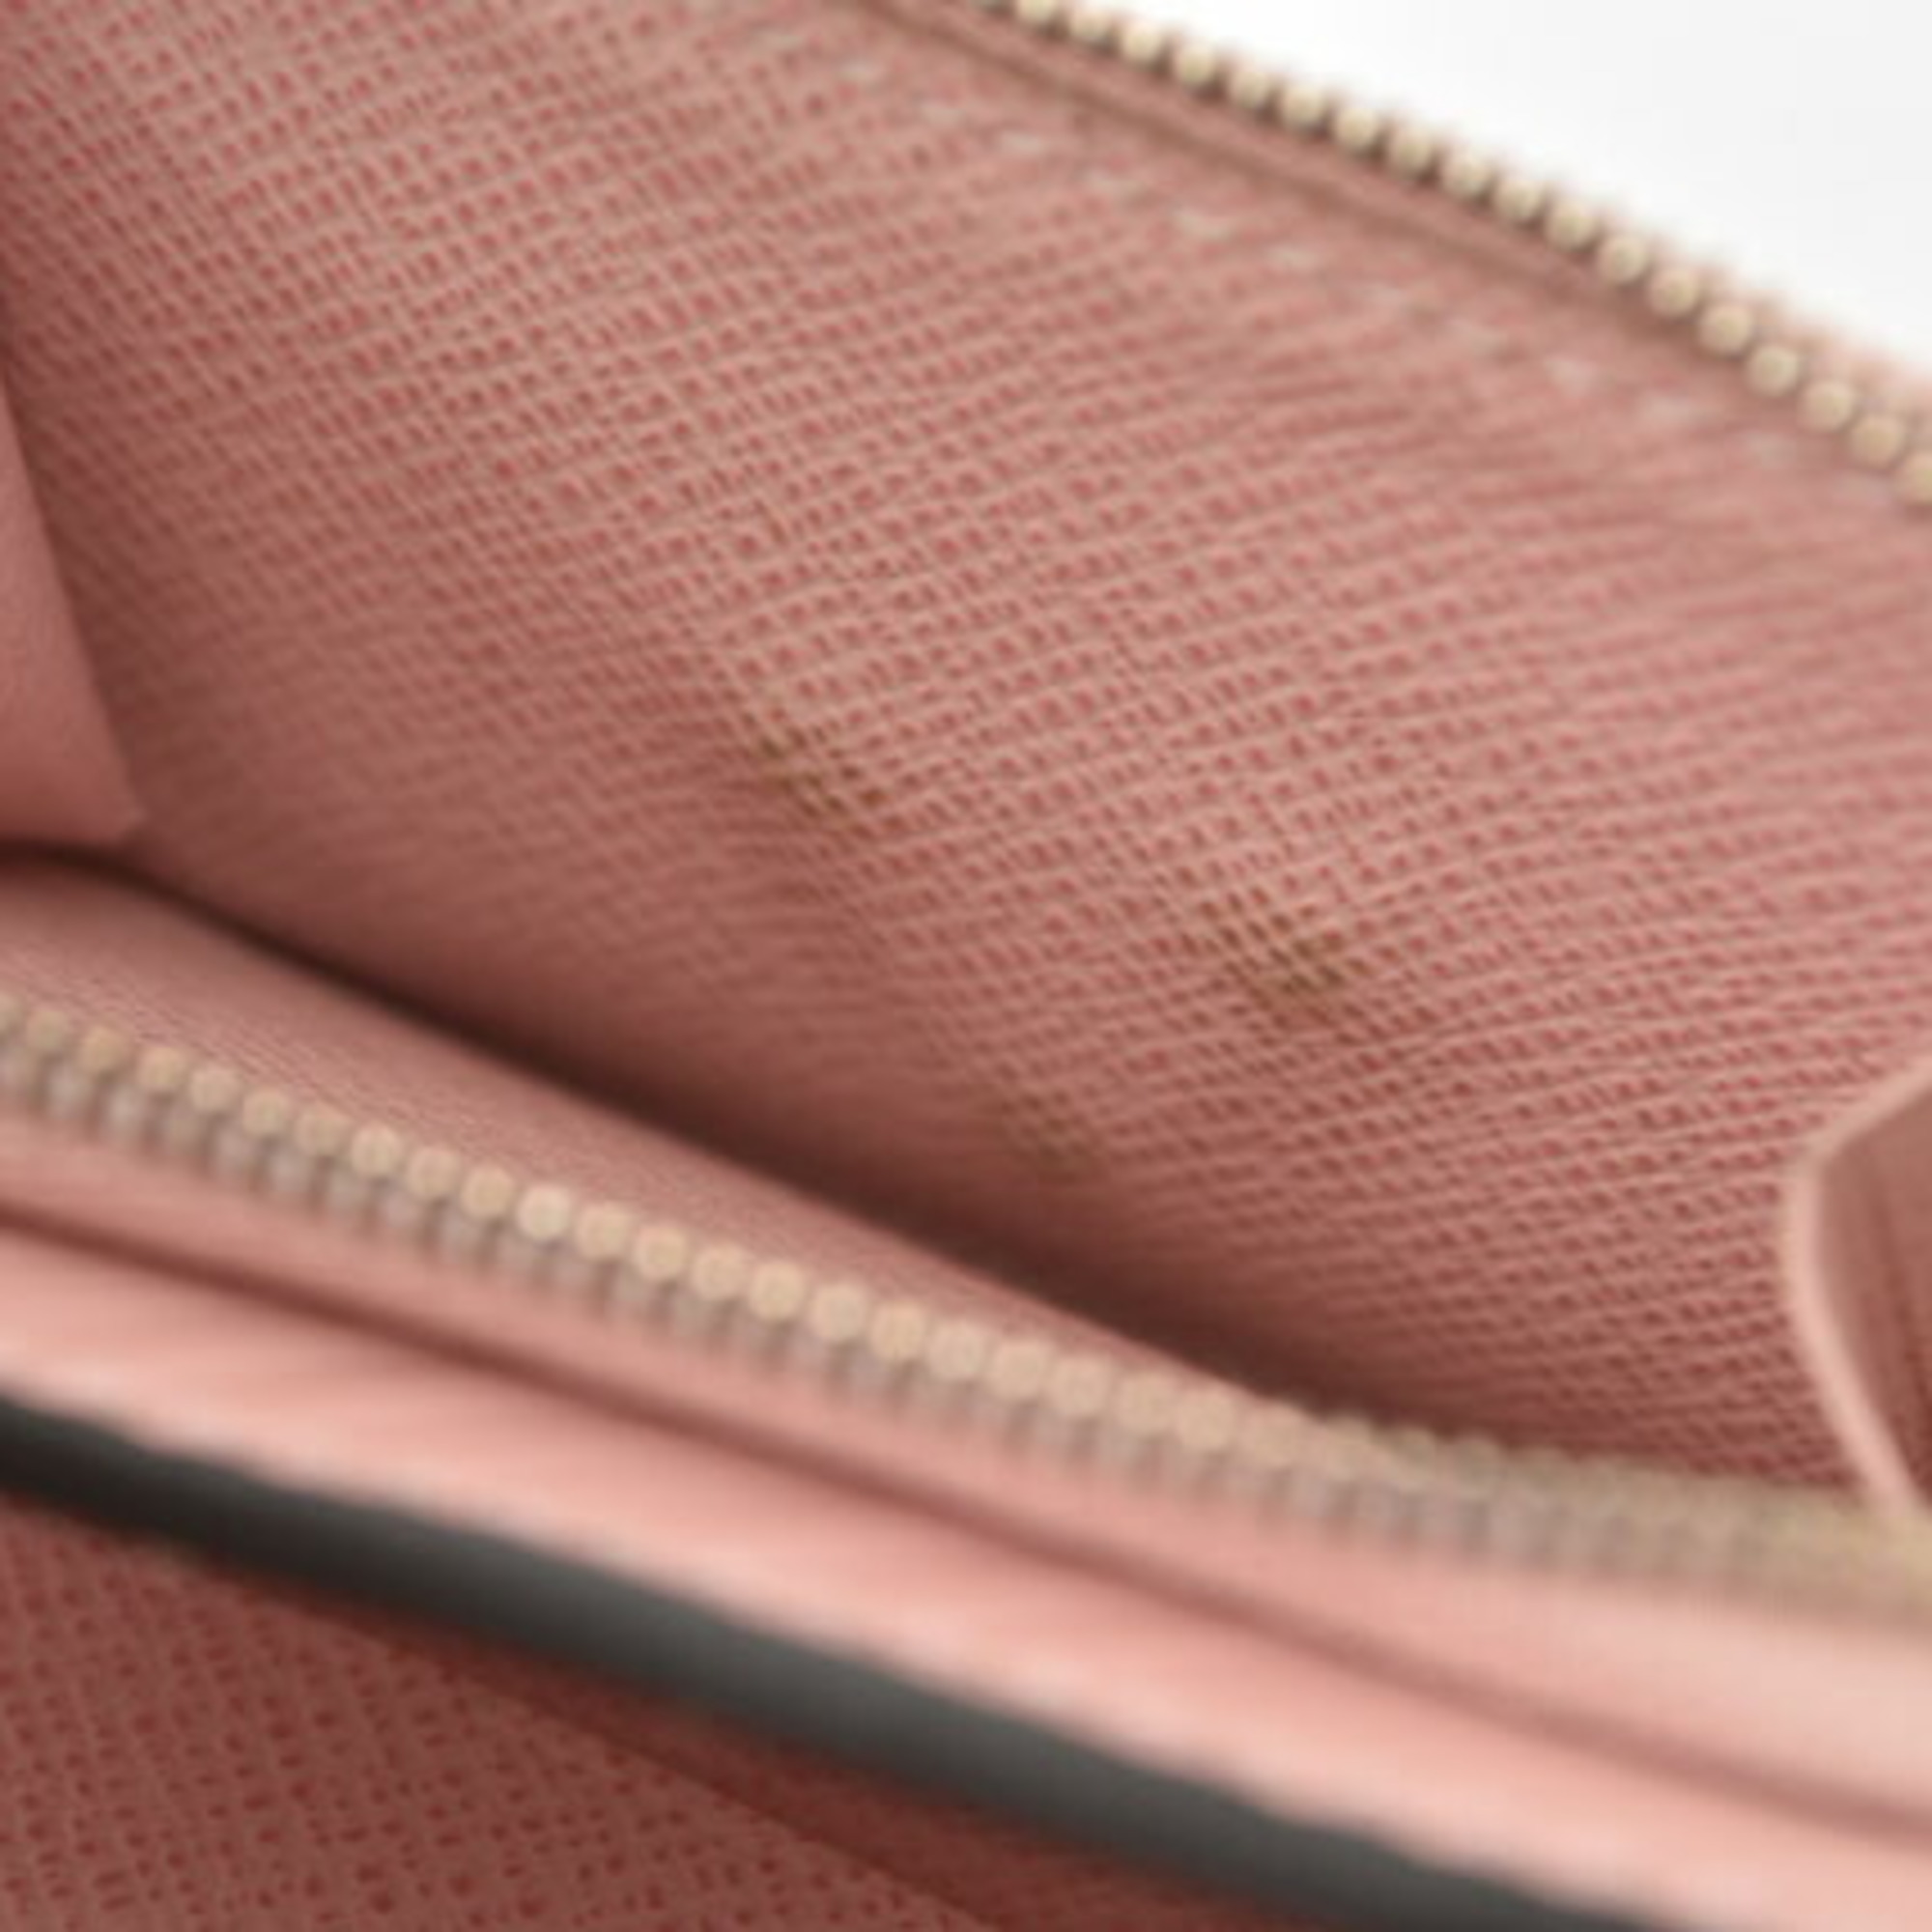 Louis Vuitton Tri-fold Wallet LOUIS VUITTON Portefeuille Twist Compact XS Epi Rose Ballerine M63323